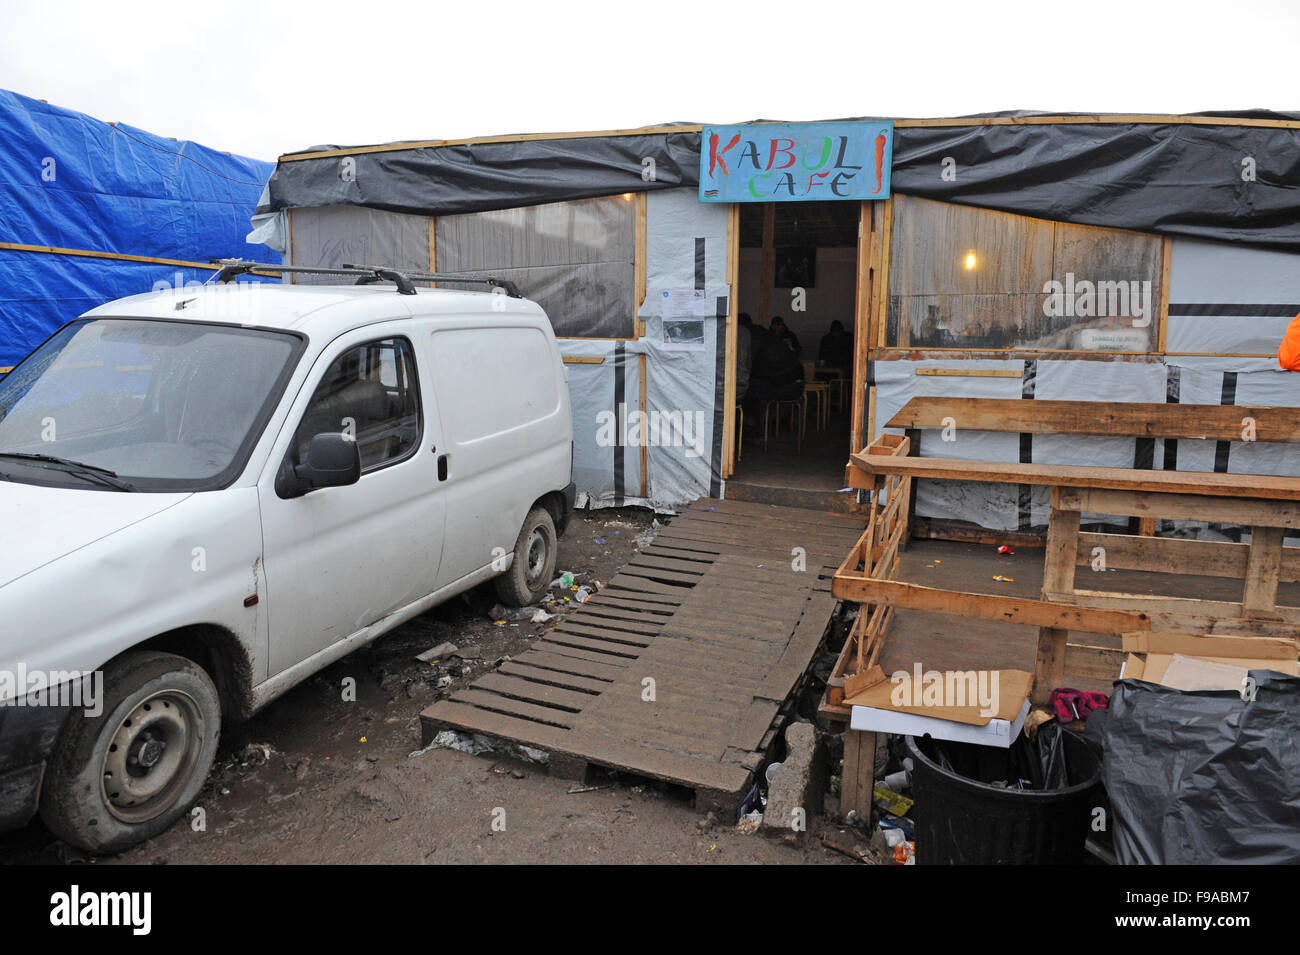 CALAIS, FRANCE. Le 13 décembre 2015. L'homme a fait don de 6 cabanes lentement remplacer tentes dans le camp de réfugiés de 'jungle'. Le café de Kaboul. Banque D'Images